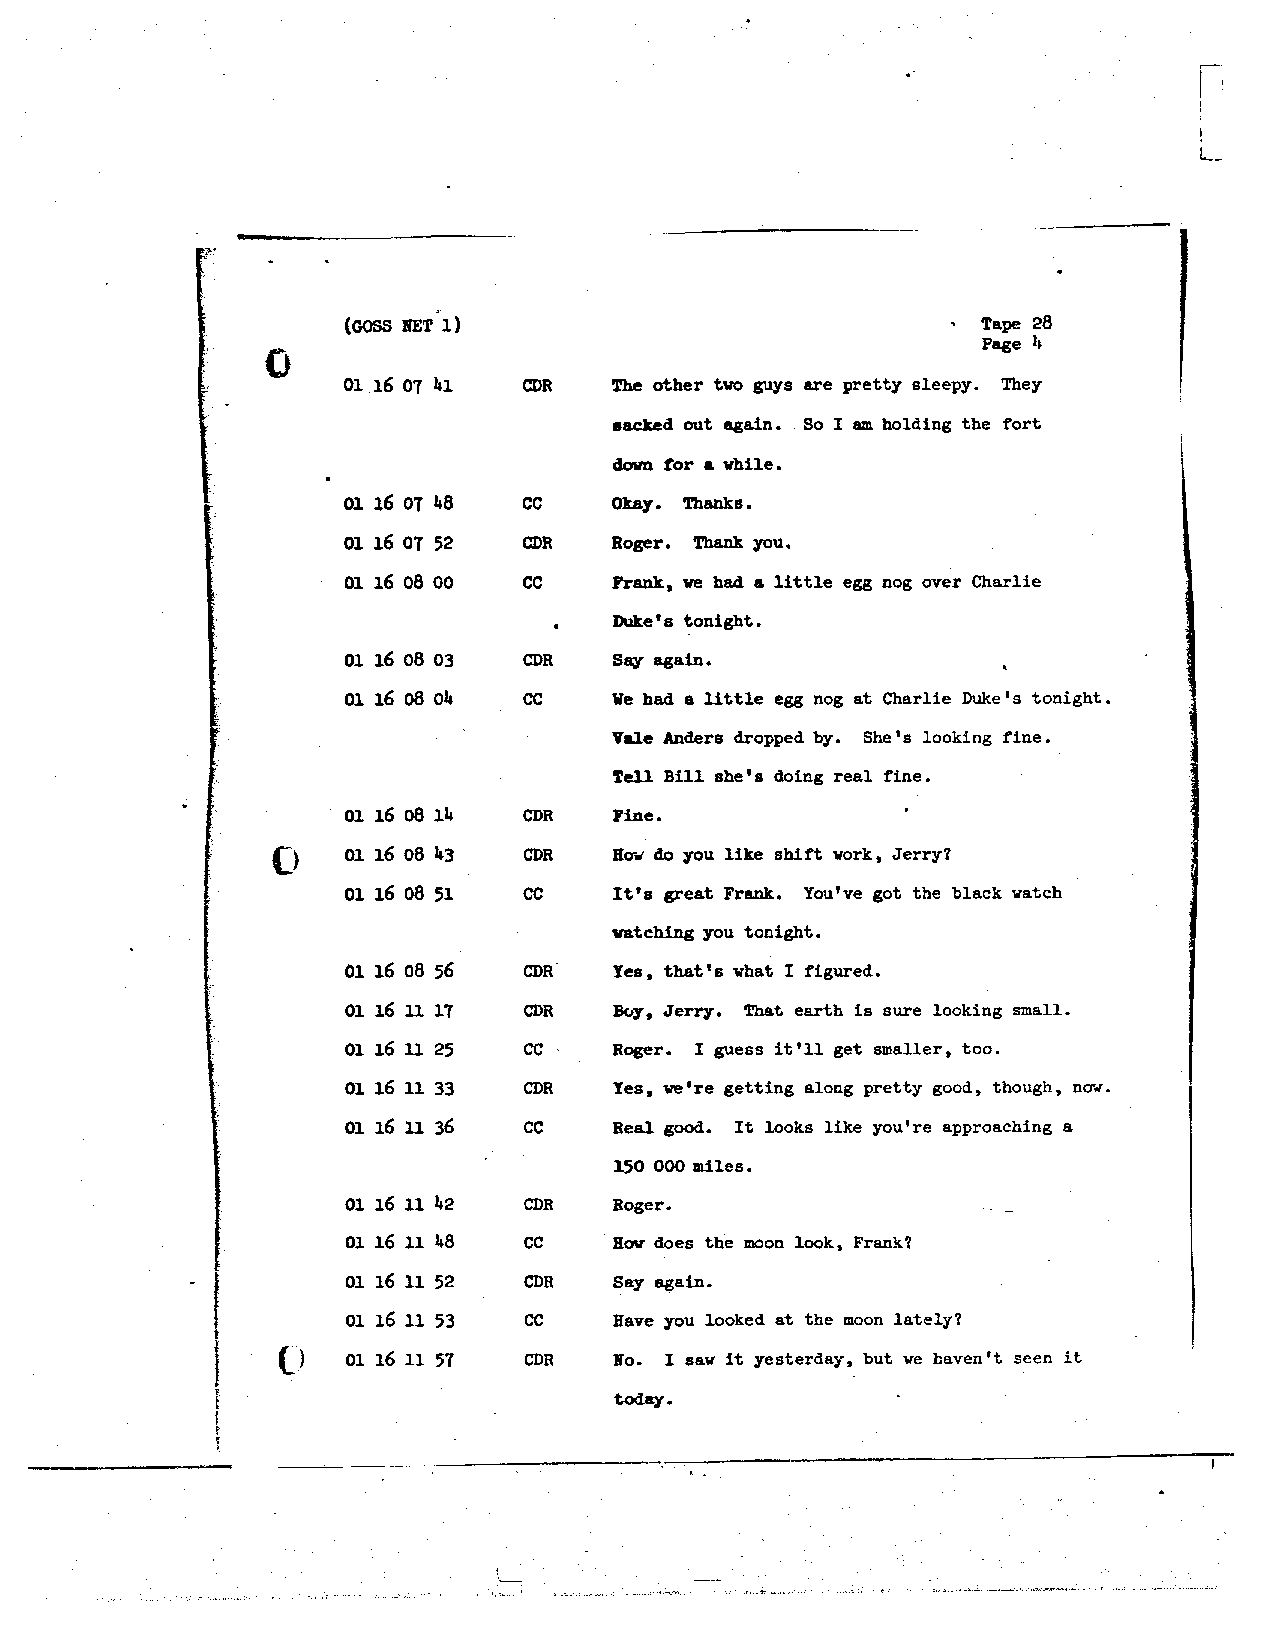 Page 225 of Apollo 8’s original transcript